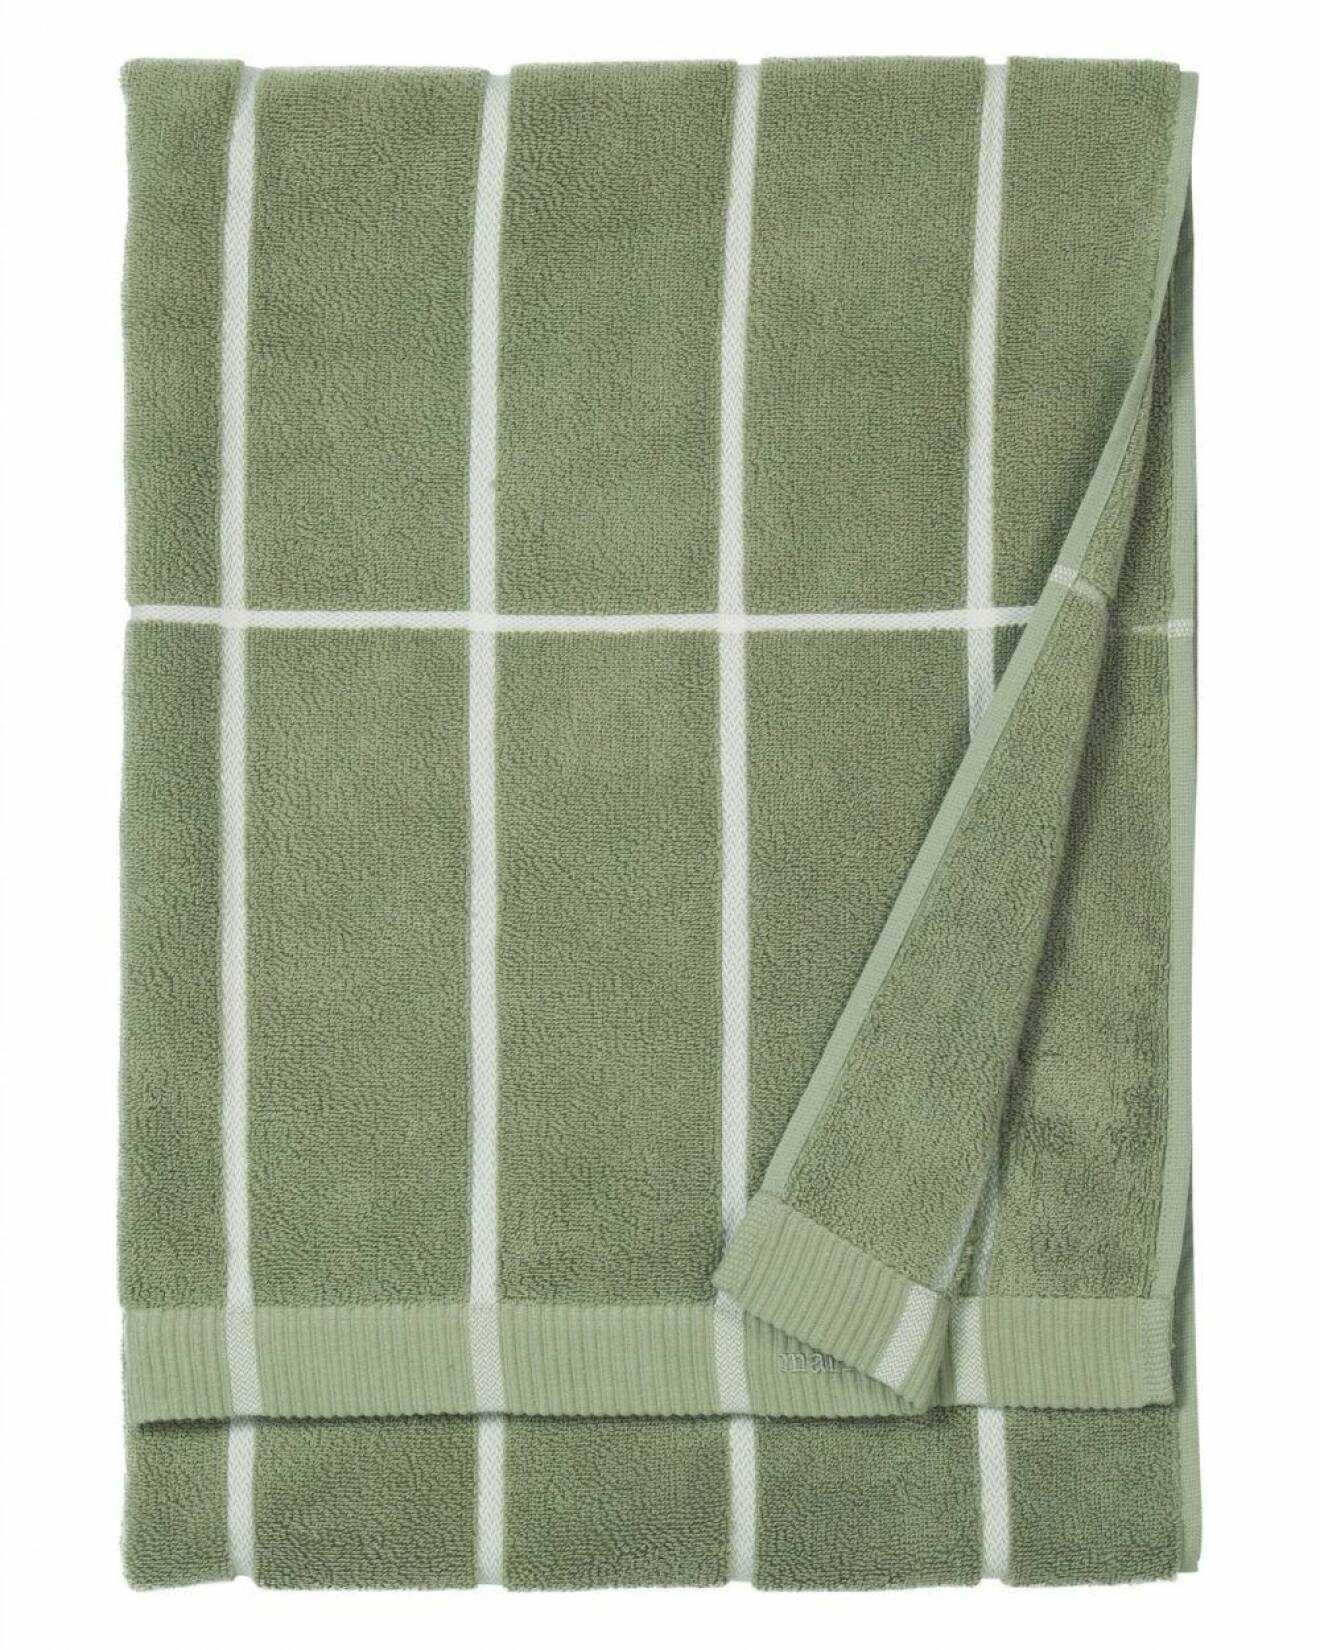 Grön handduk från Marimekko.